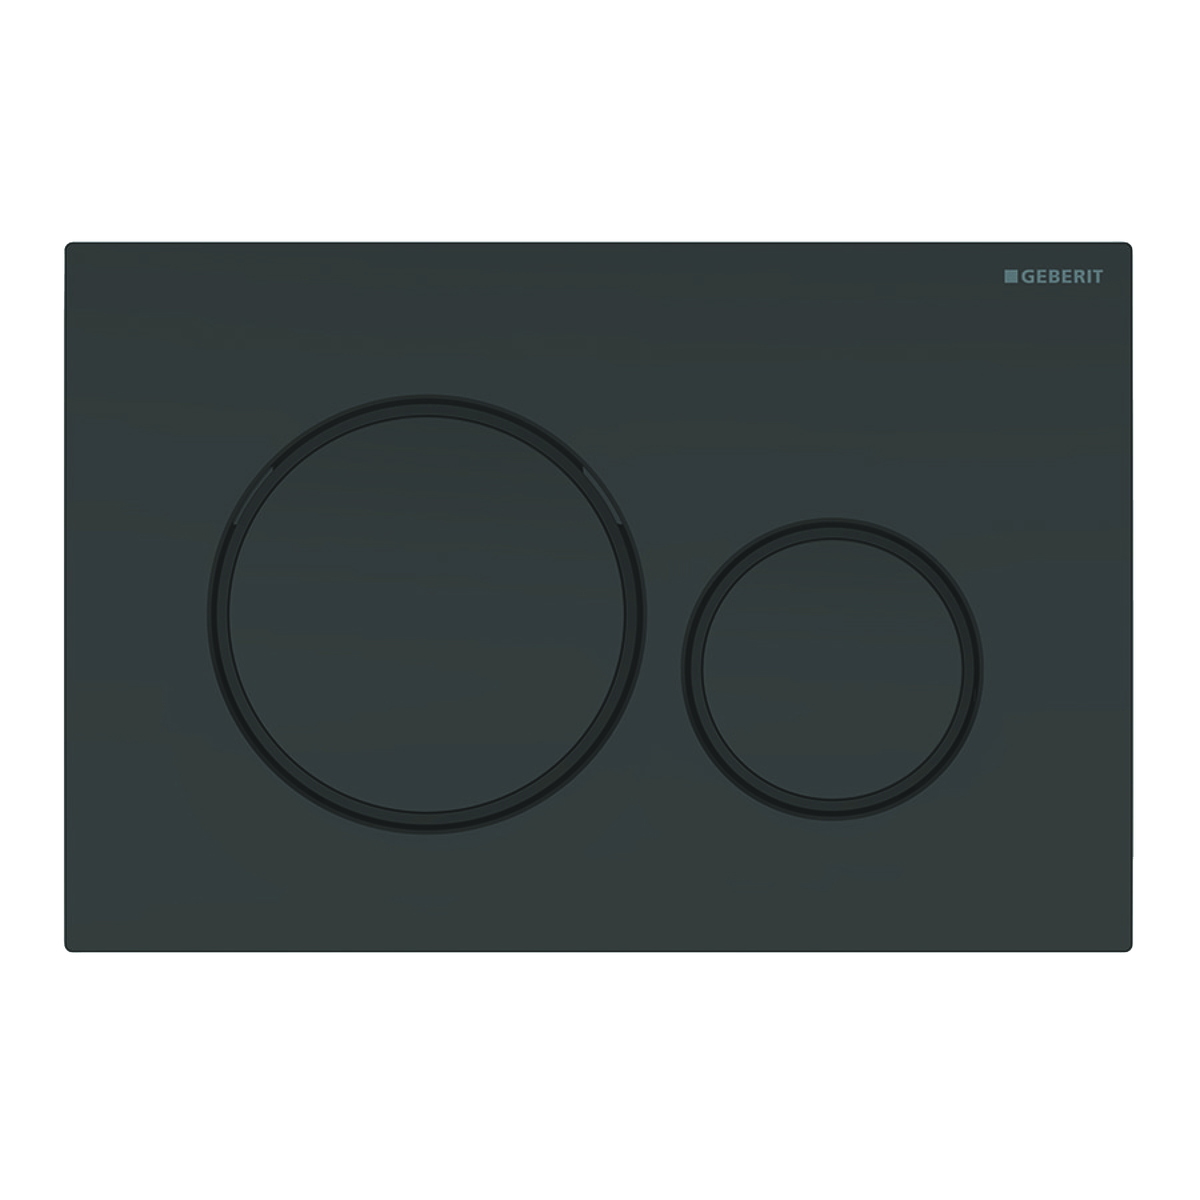 Geberit sigma 20 bedieningplaat met dualflush frontbediening voor toilet 24.6x16.4cm zwart / matzwart